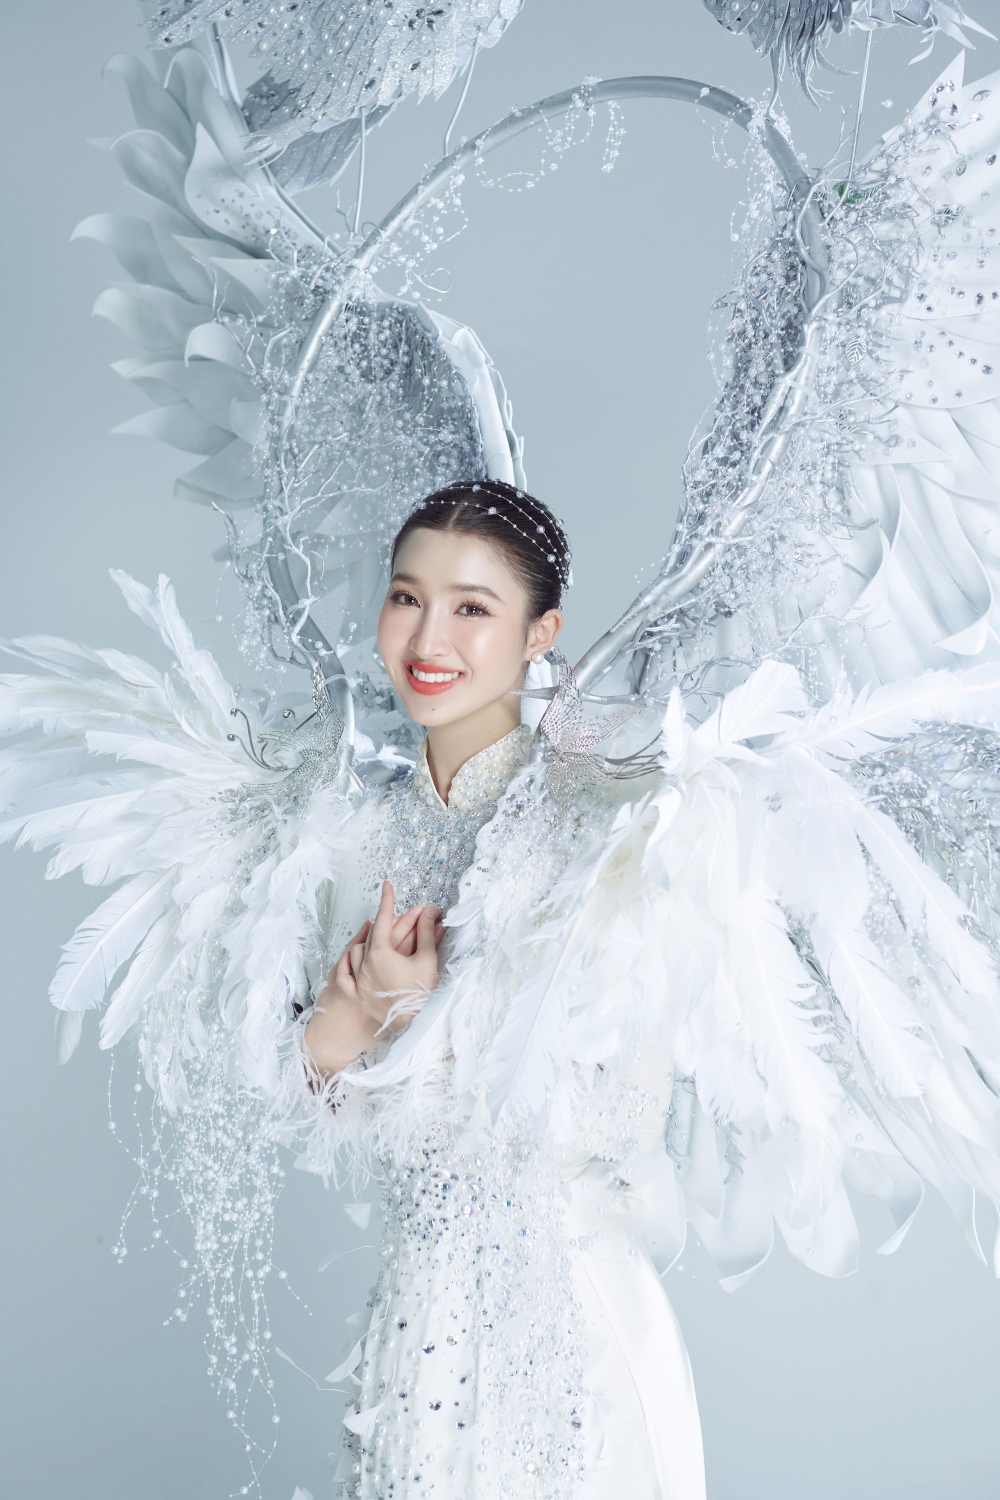 Phương Nhi đem trang phục “Cò ơi” nặng hơn 10kg đến Miss International 2023 - Ảnh 1.